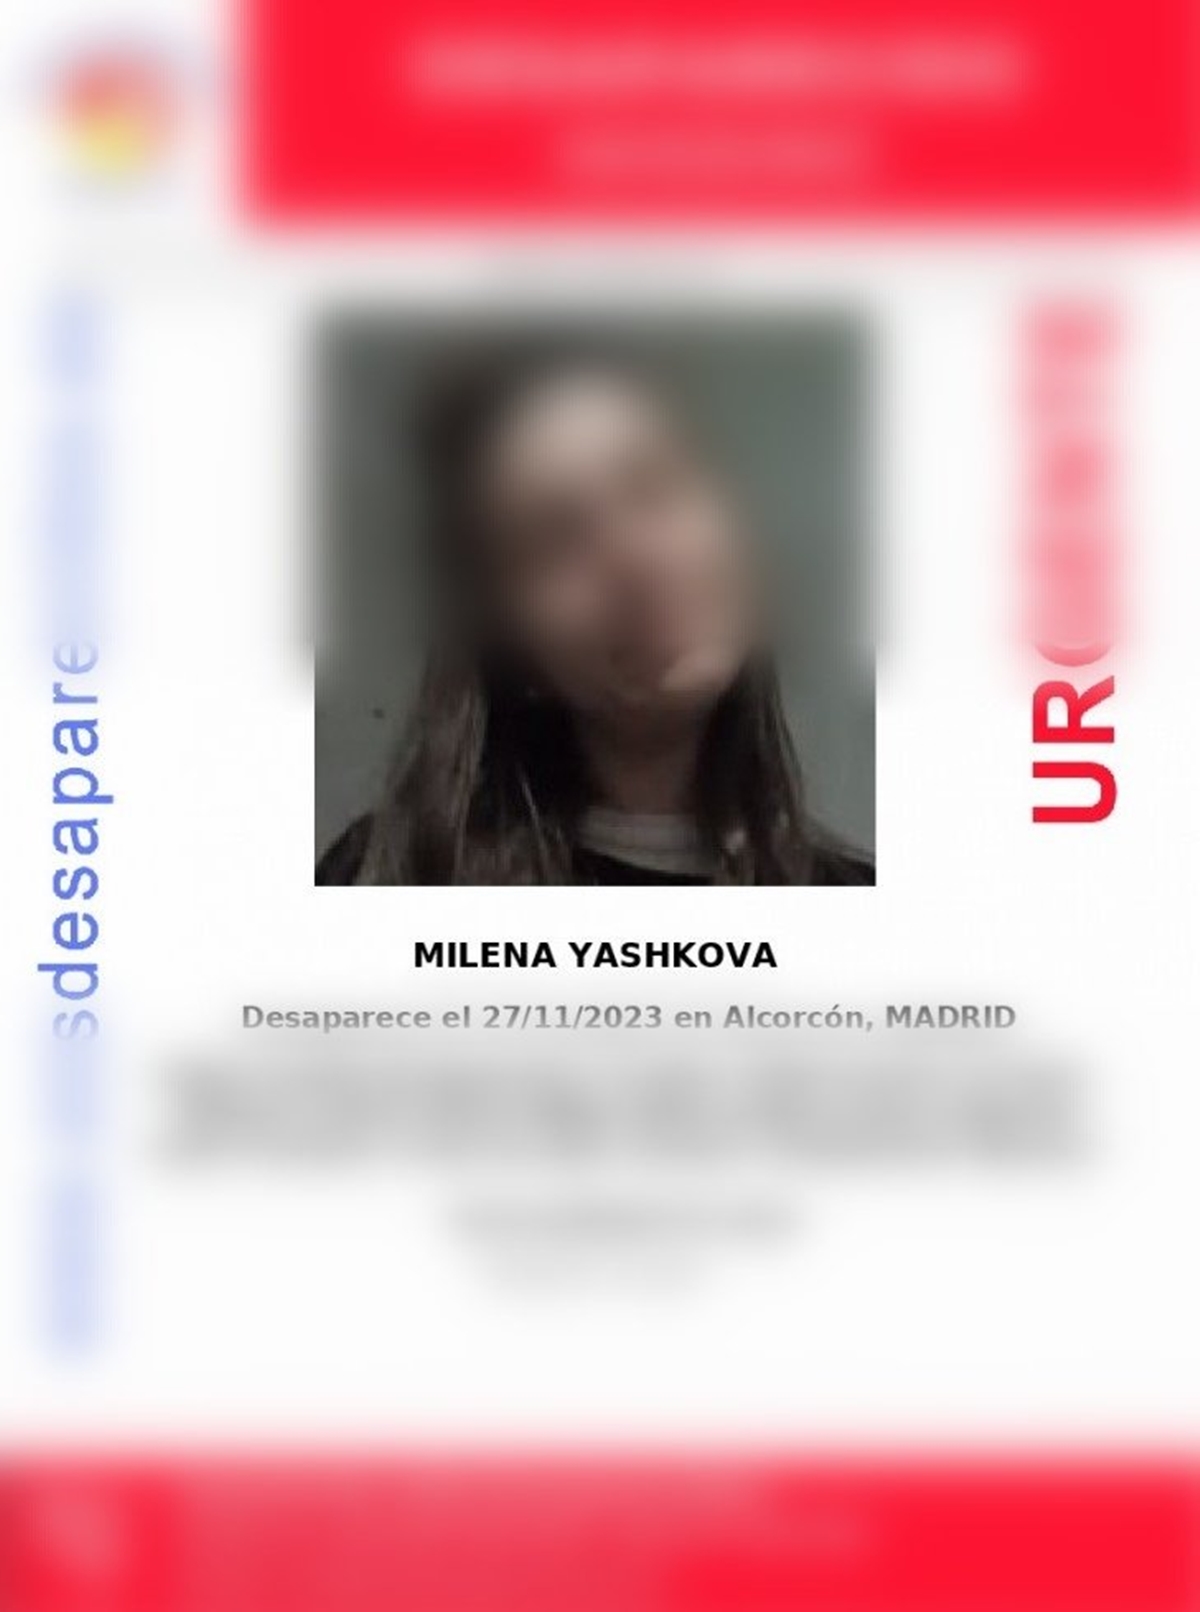 La adolescente ucraniana desaparecida en Alcorcón ha sido localizada